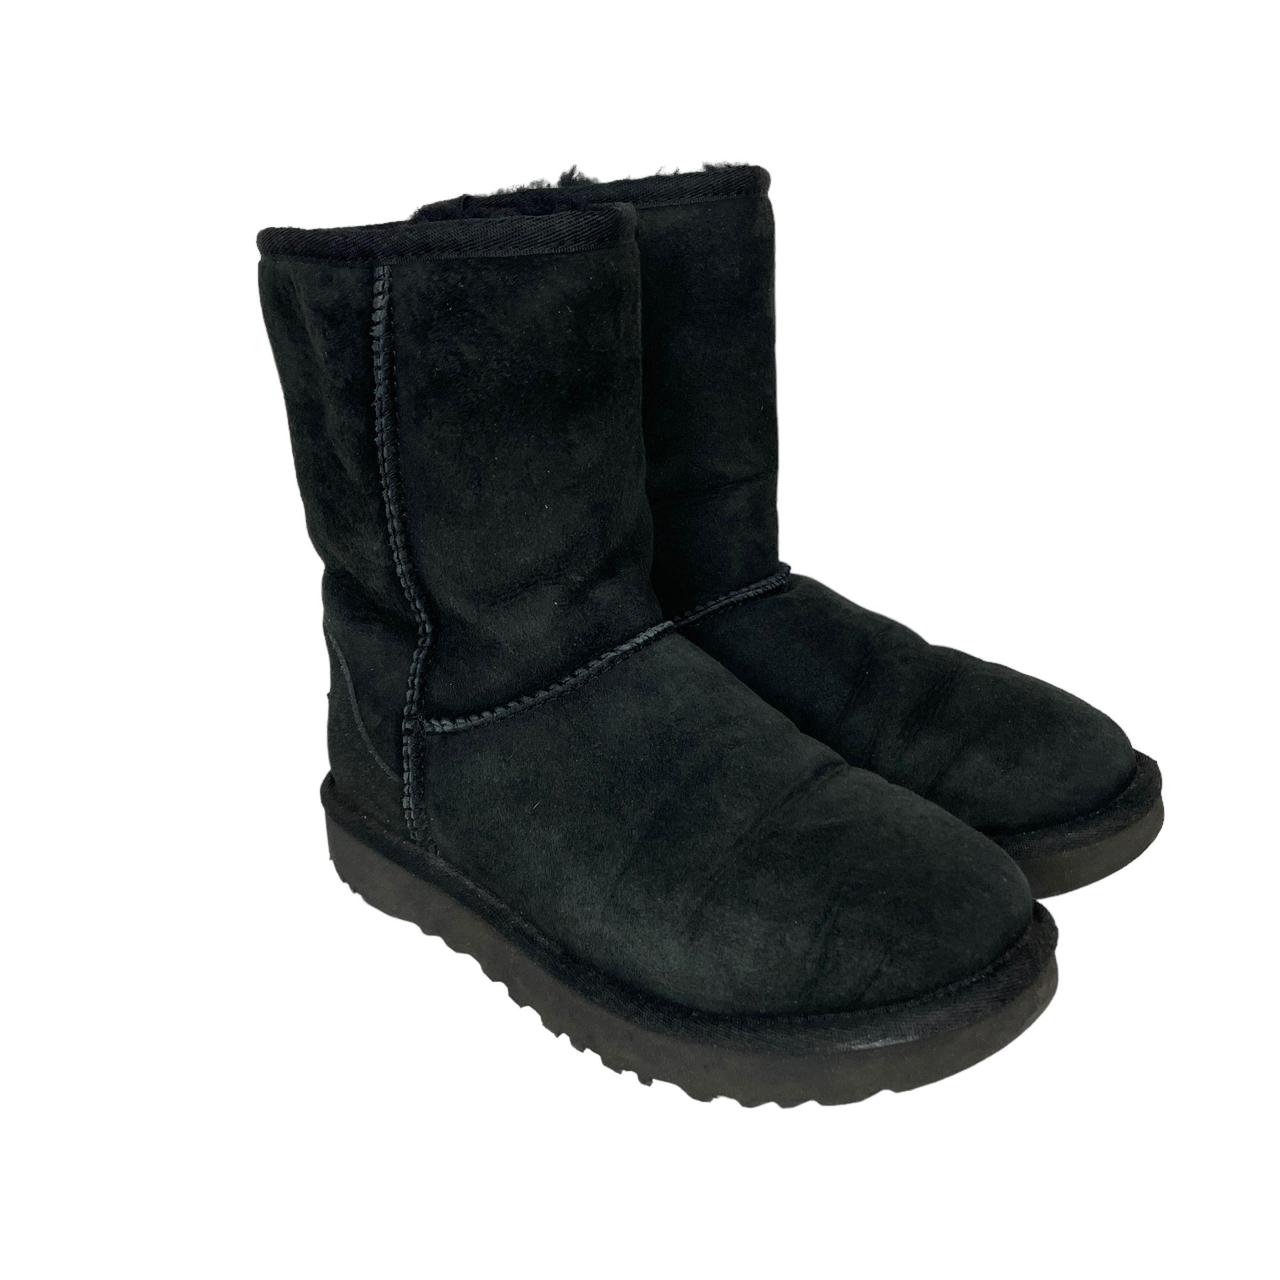 Ugg Sheepskin Boots Black Ladies Size 4.5UK Ugg... - Depop